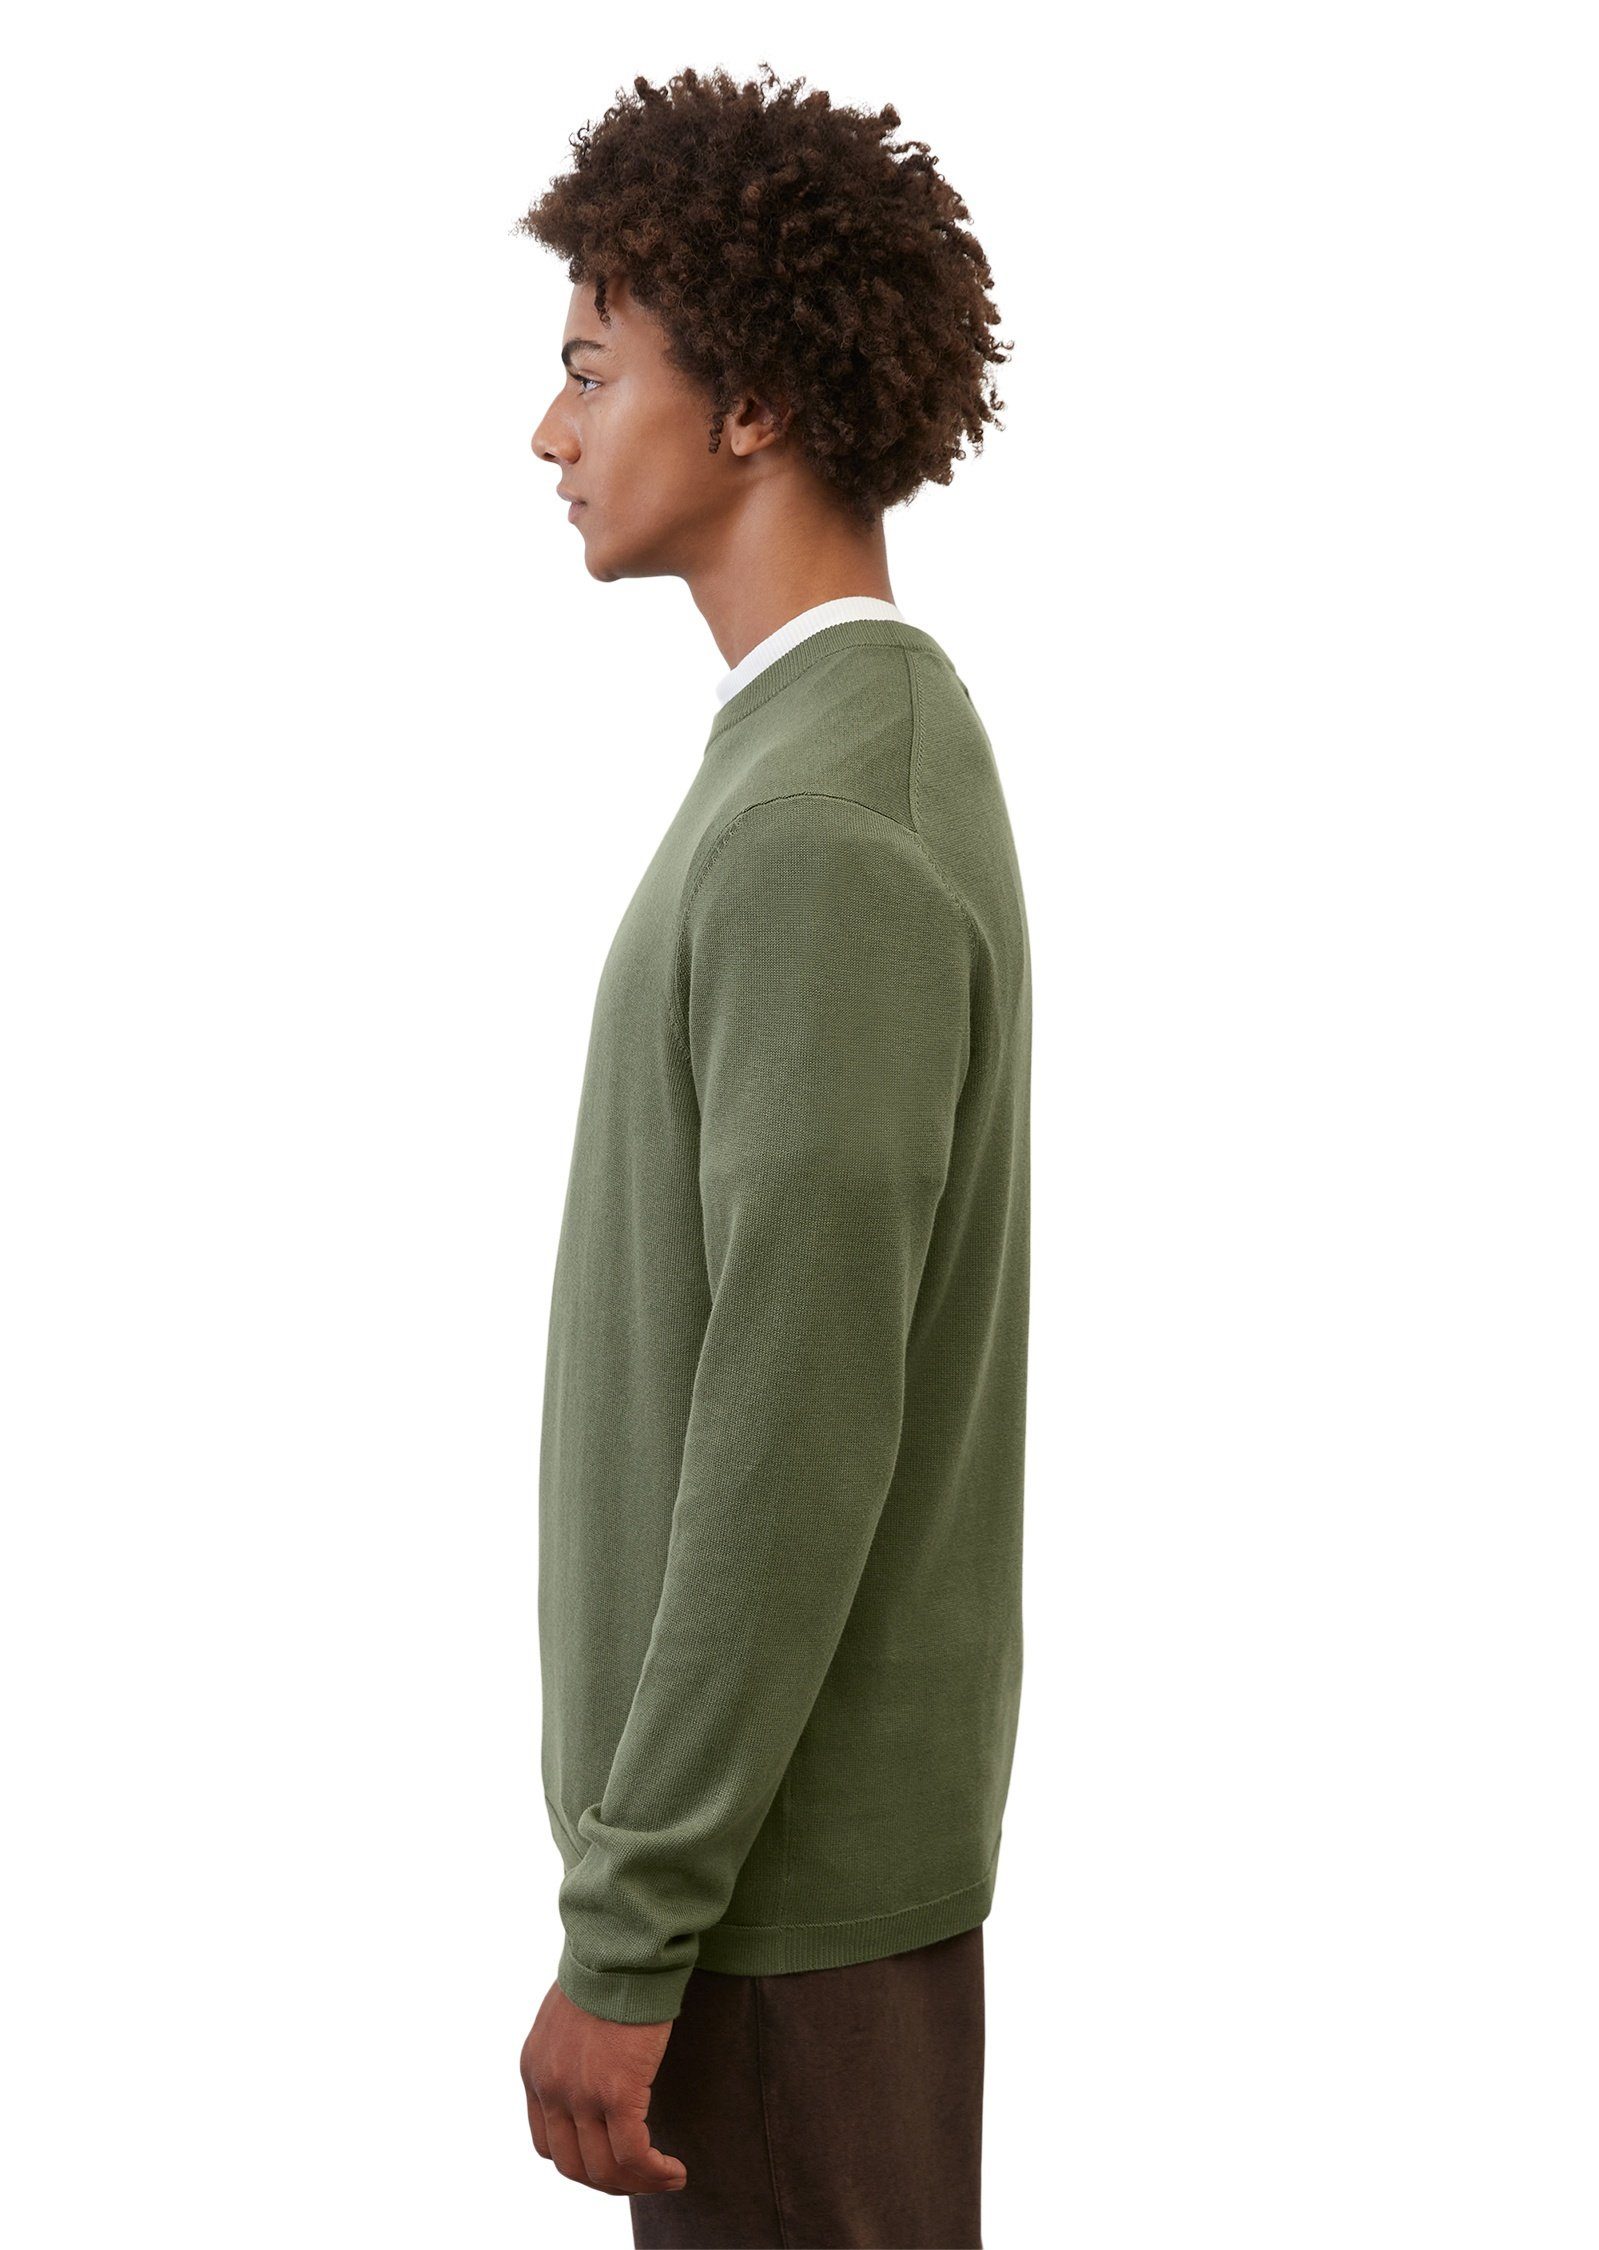 Marc O'Polo Rundhalspullover in softer Cotton-Cashmere-Qualität grün